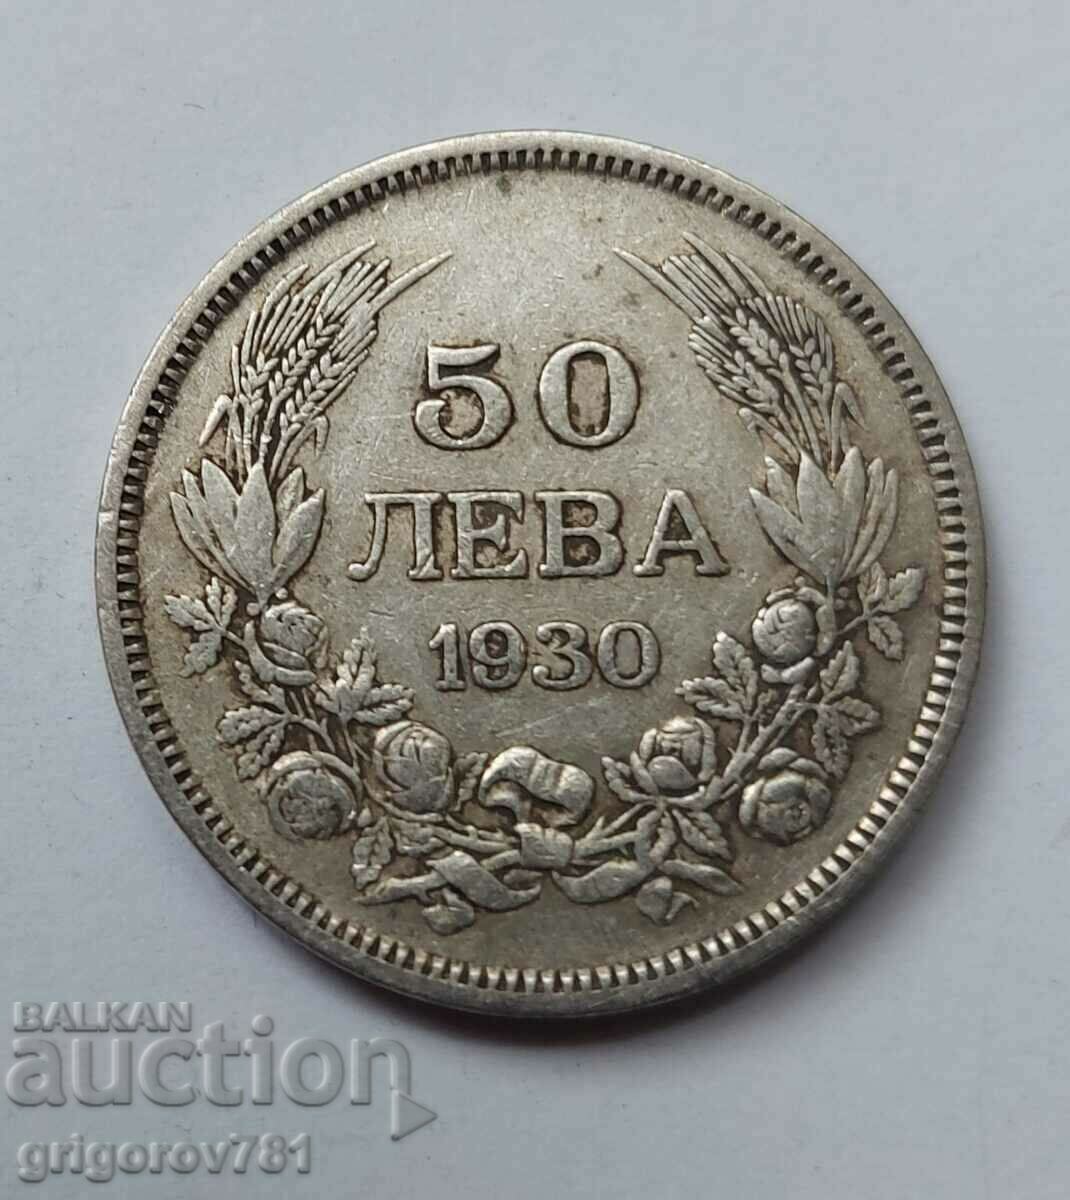 50 leva silver Bulgaria 1930 - silver coin #62